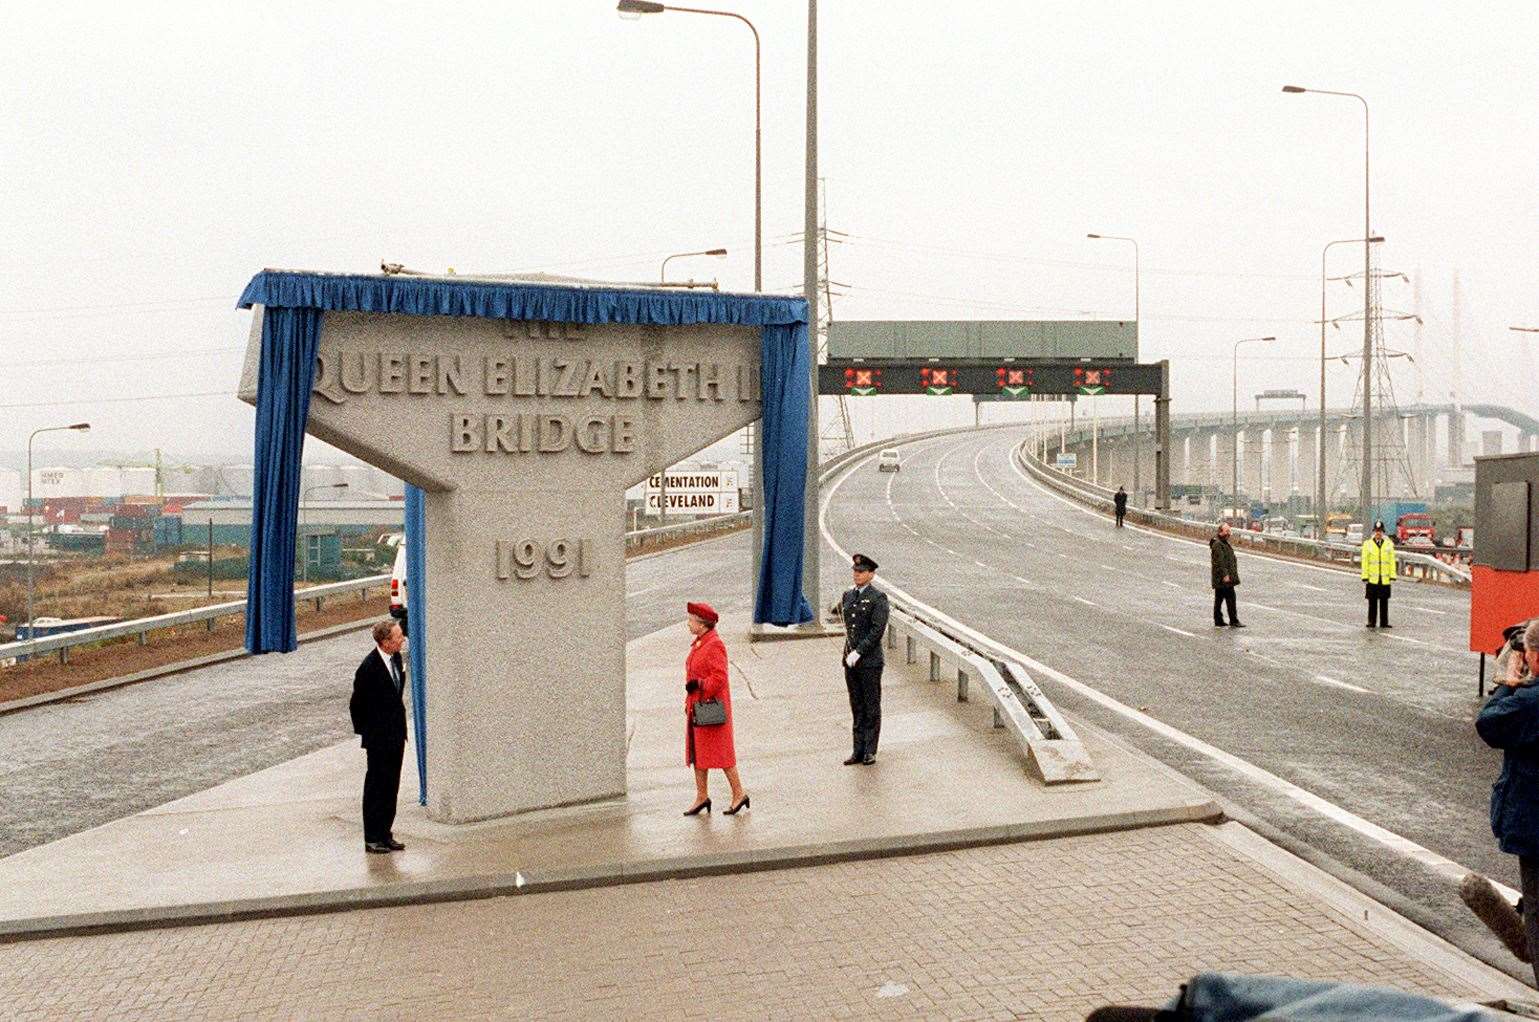 The Queen Elizabeth II Bridge in Dartford is opened by Her Majesty on October 30, 1991